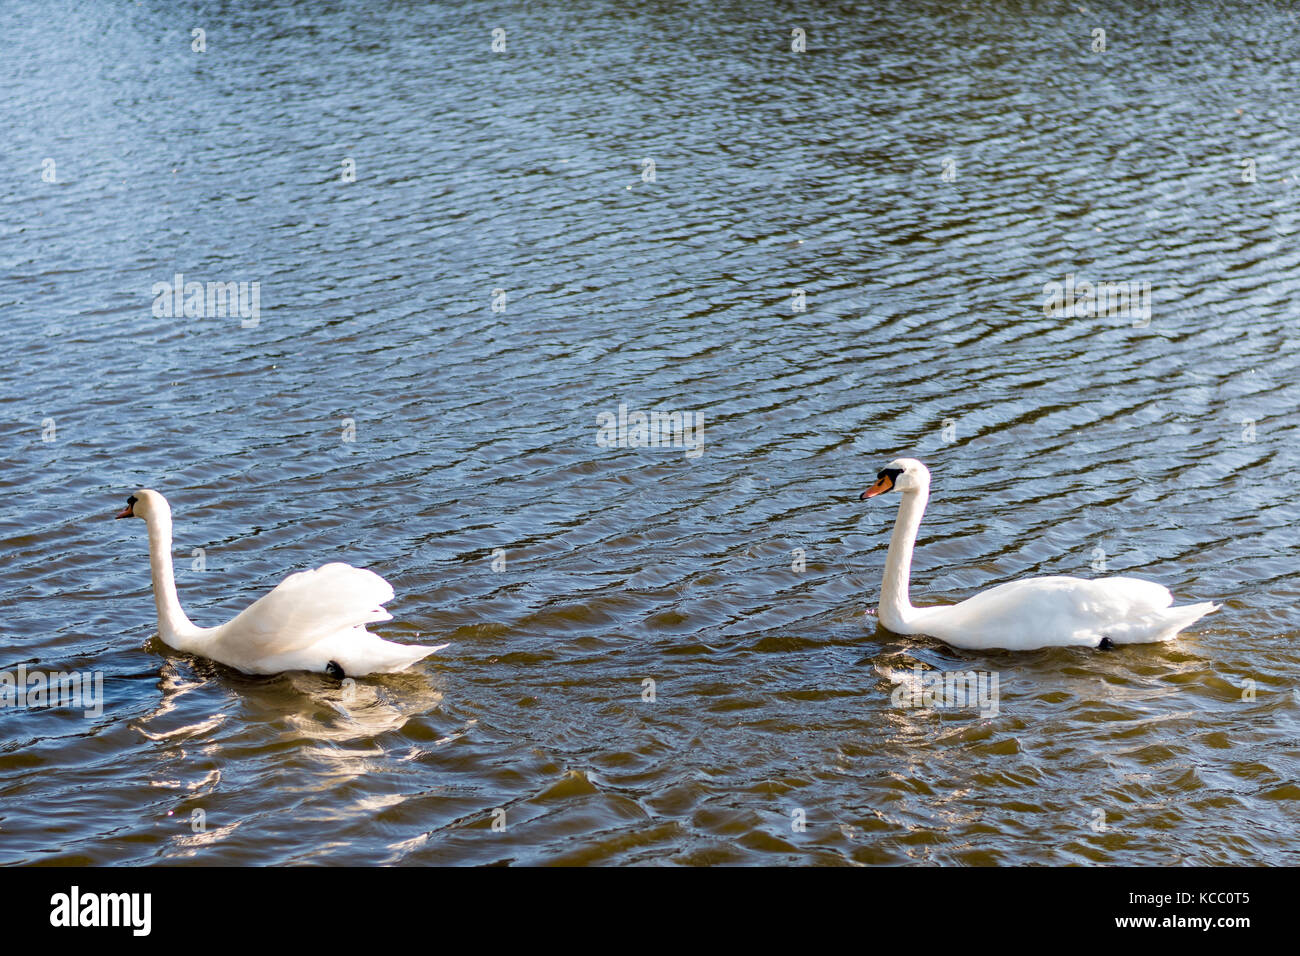 Schönen wilden Schwäne schwimmen in einem See. Reine weiße Federn, Wellen auf der Wasseroberfläche. Stockfoto